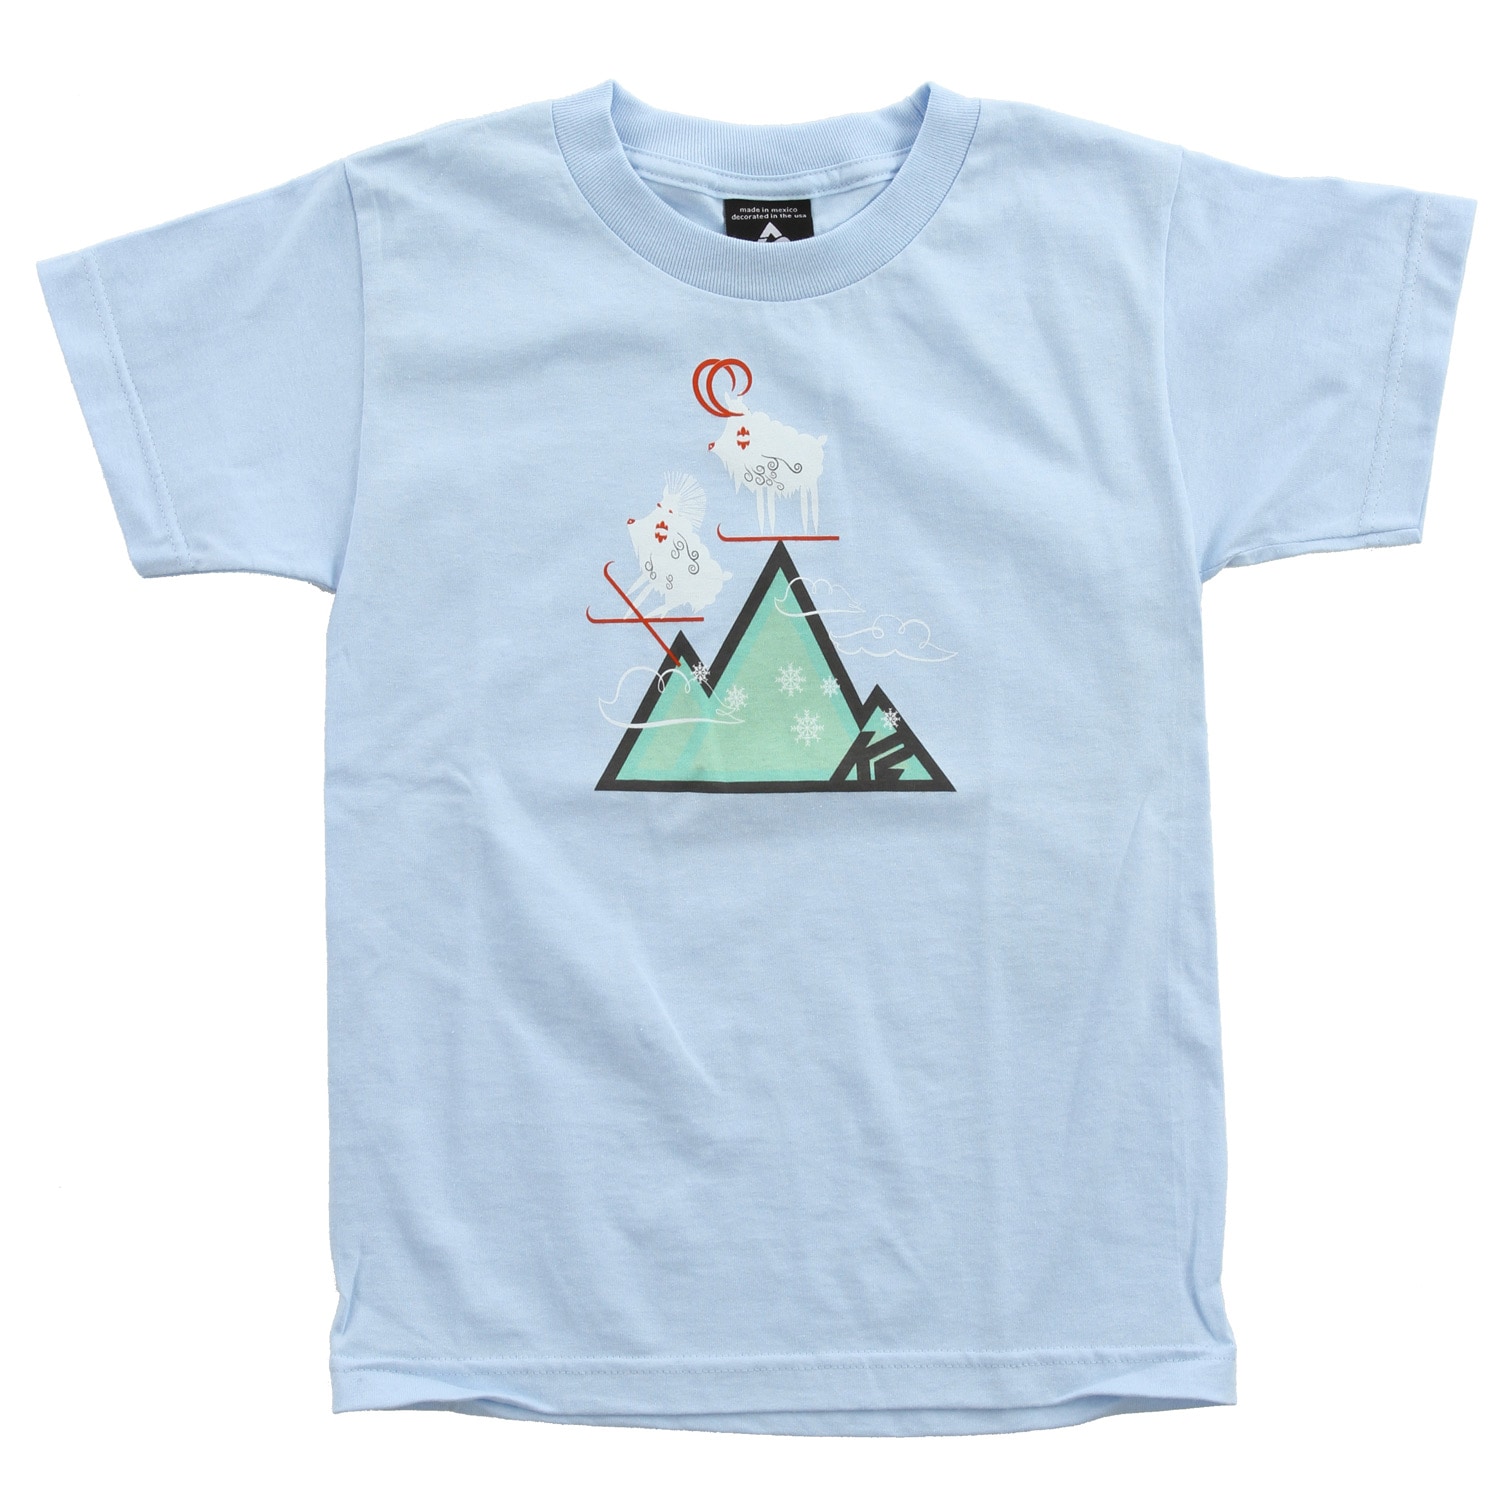 mountain t shirt